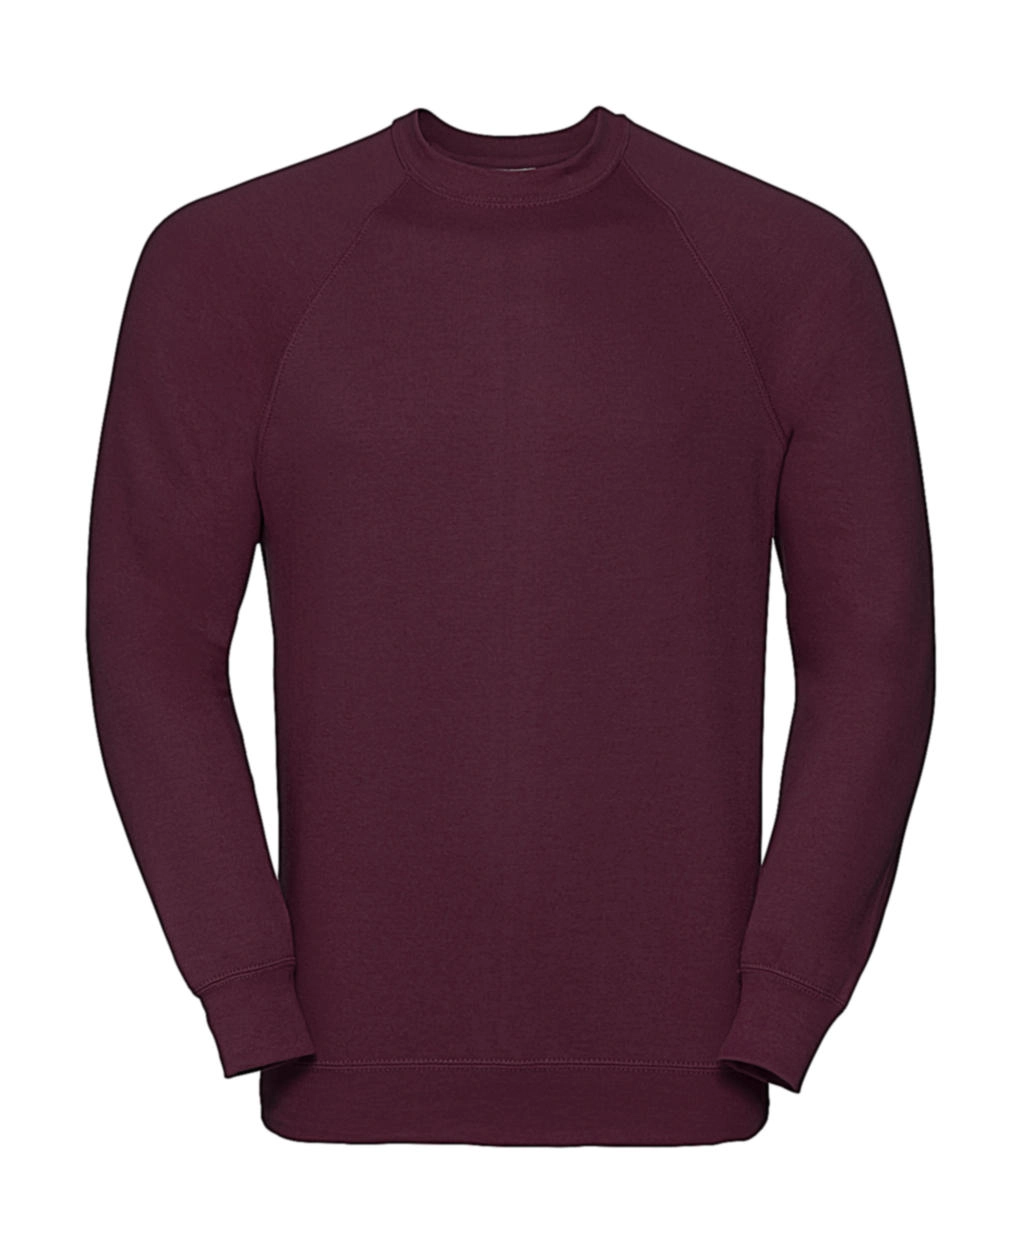 Classic Raglan Sweatshirt zum Besticken und Bedrucken in der Farbe Burgundy mit Ihren Logo, Schriftzug oder Motiv.